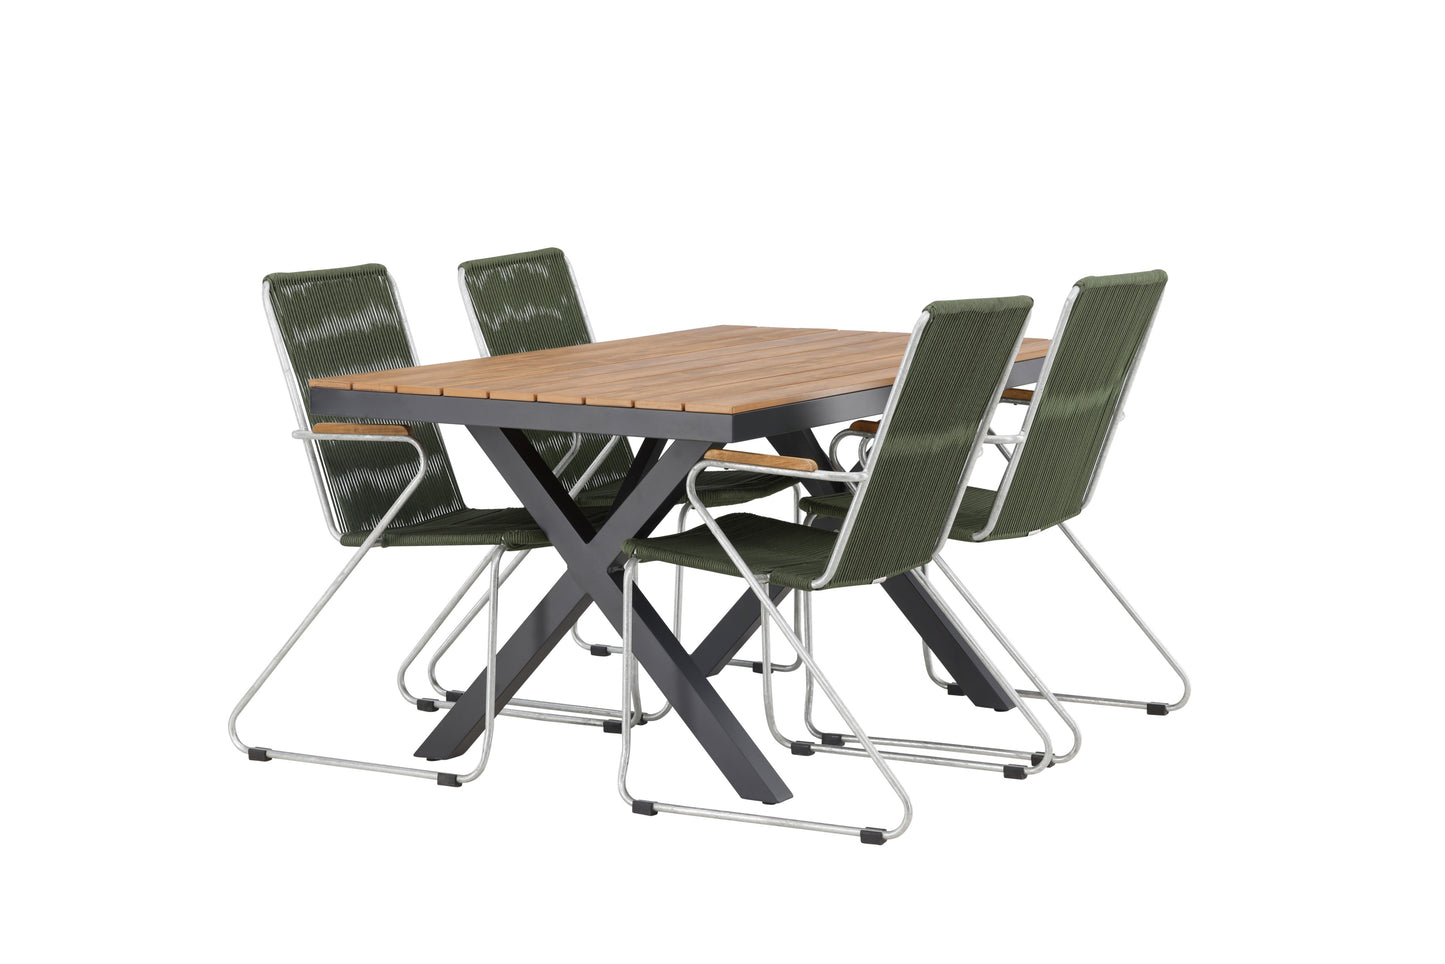 Garcia - Spisebord, Aluminium - Sort / Rektangulær 90*150* + Bois stol Stål - Sølv / Grønt Reb